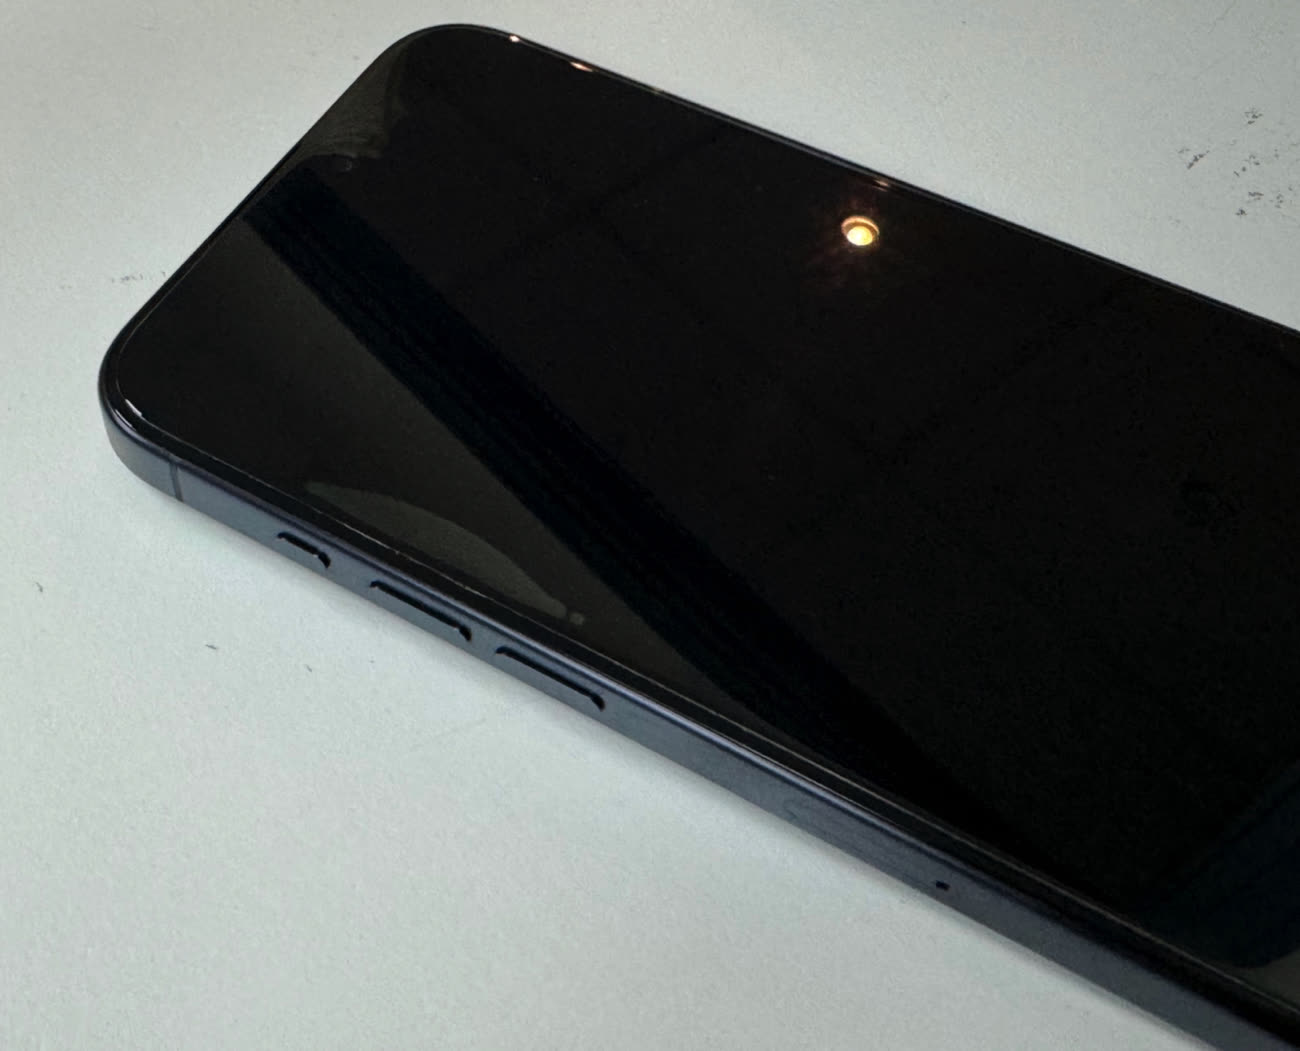 Protège-écran en verre UltraGlass 2 de Belkin pour iPhone 15 Pro Max -  Apple (FR)